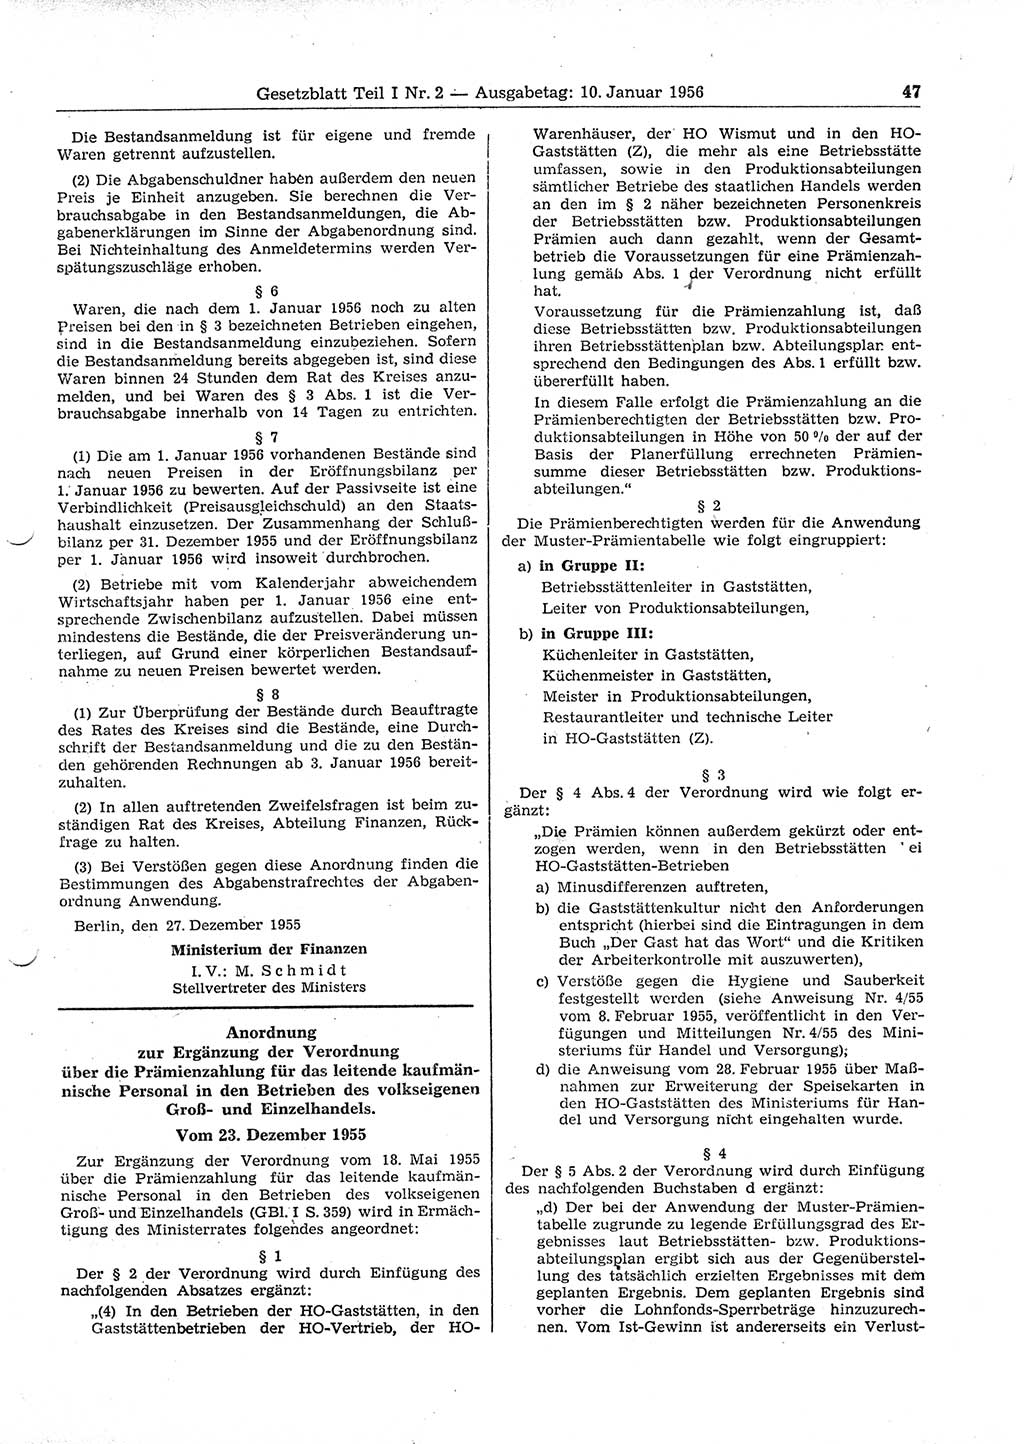 Gesetzblatt (GBl.) der Deutschen Demokratischen Republik (DDR) Teil Ⅰ 1956, Seite 47 (GBl. DDR Ⅰ 1956, S. 47)